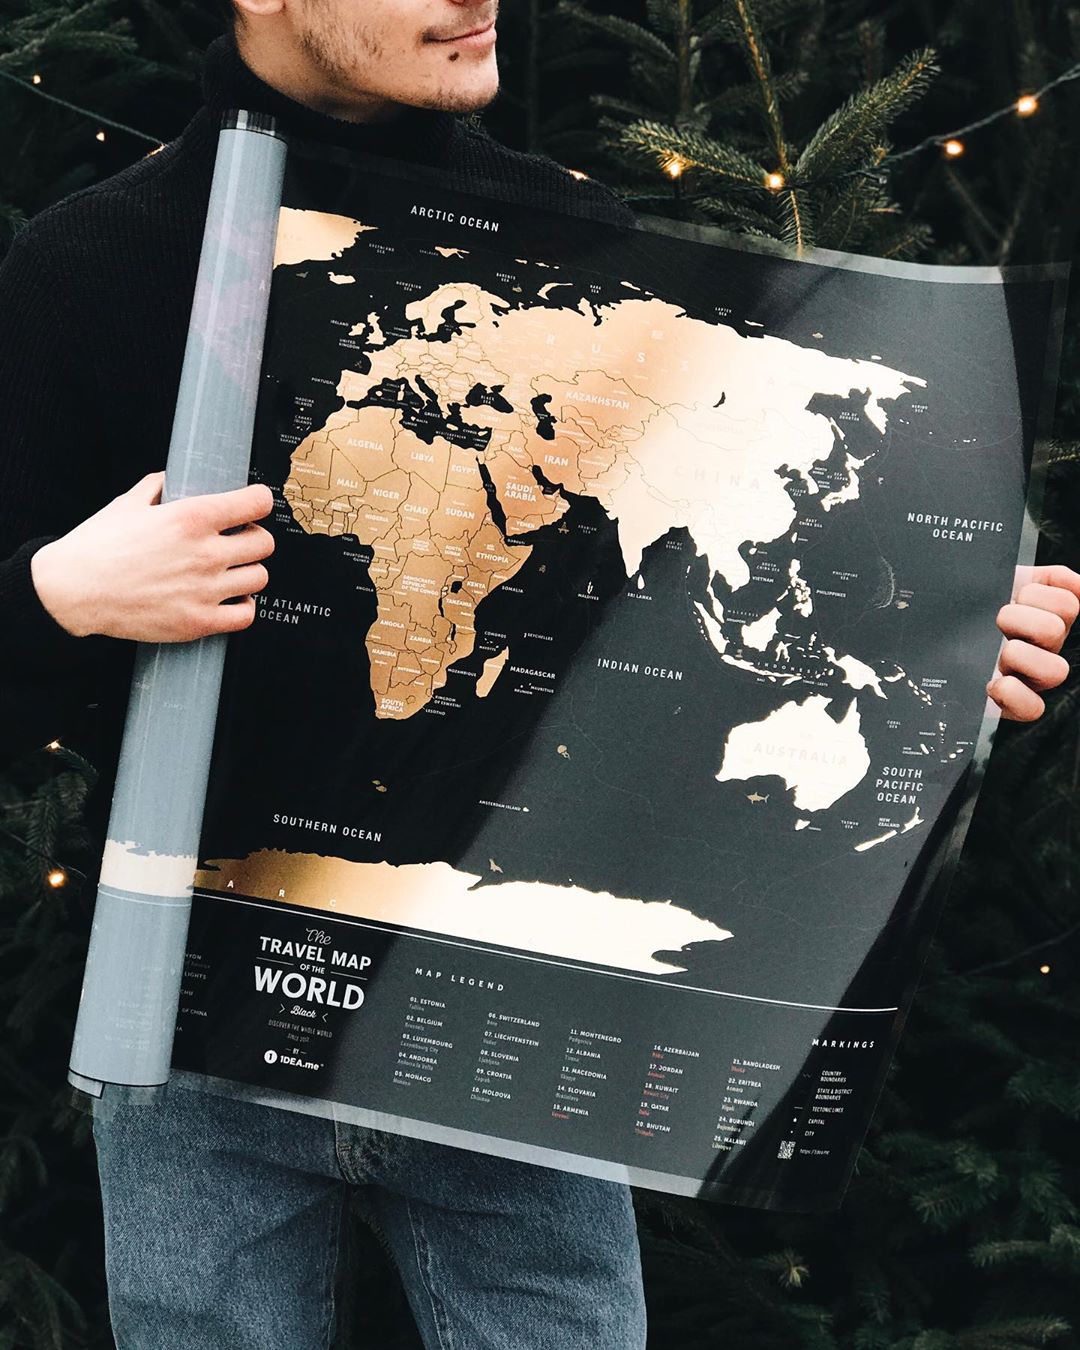 World Travel Black nástenná stieracia mapa sveta+tubus+darček 60x80cm /anglicky